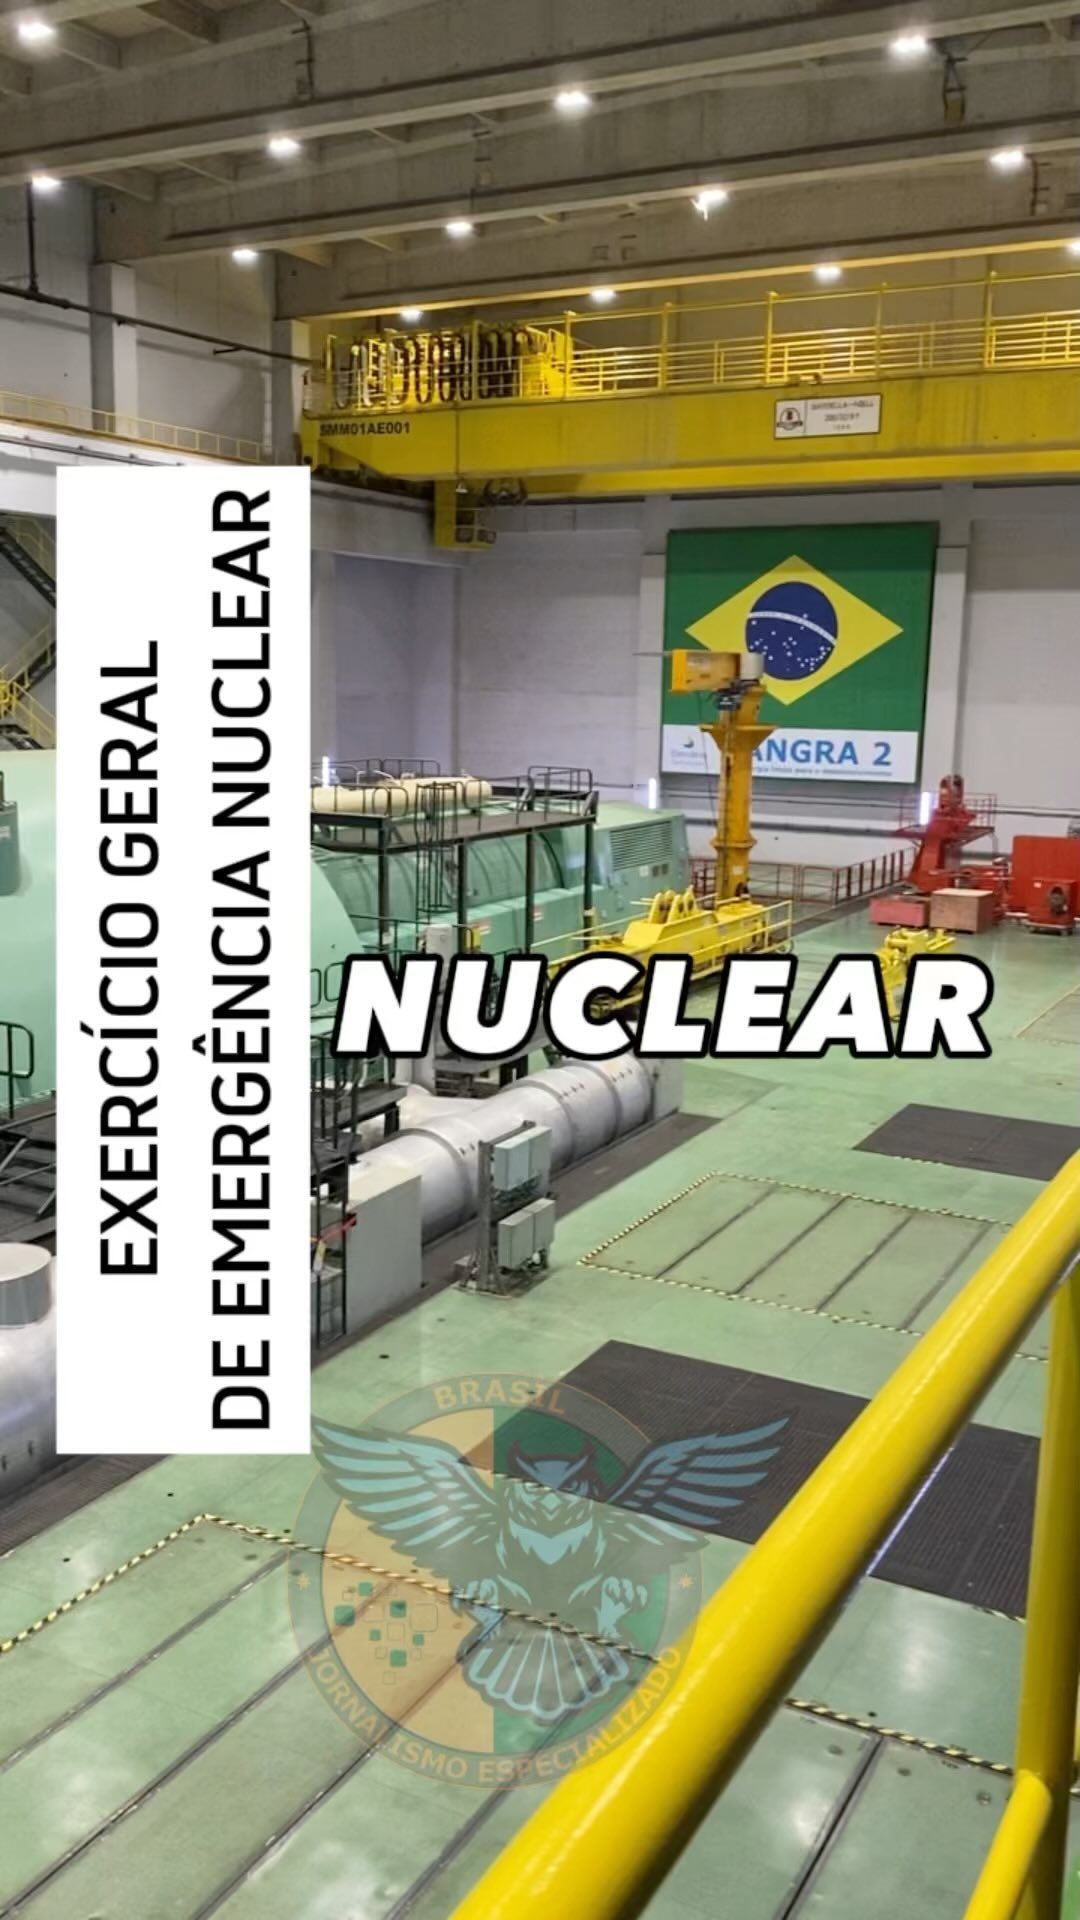 Exercício Geral de Emergência Nuclear - 2023

As usinas nucleares de Angra 1 e A...